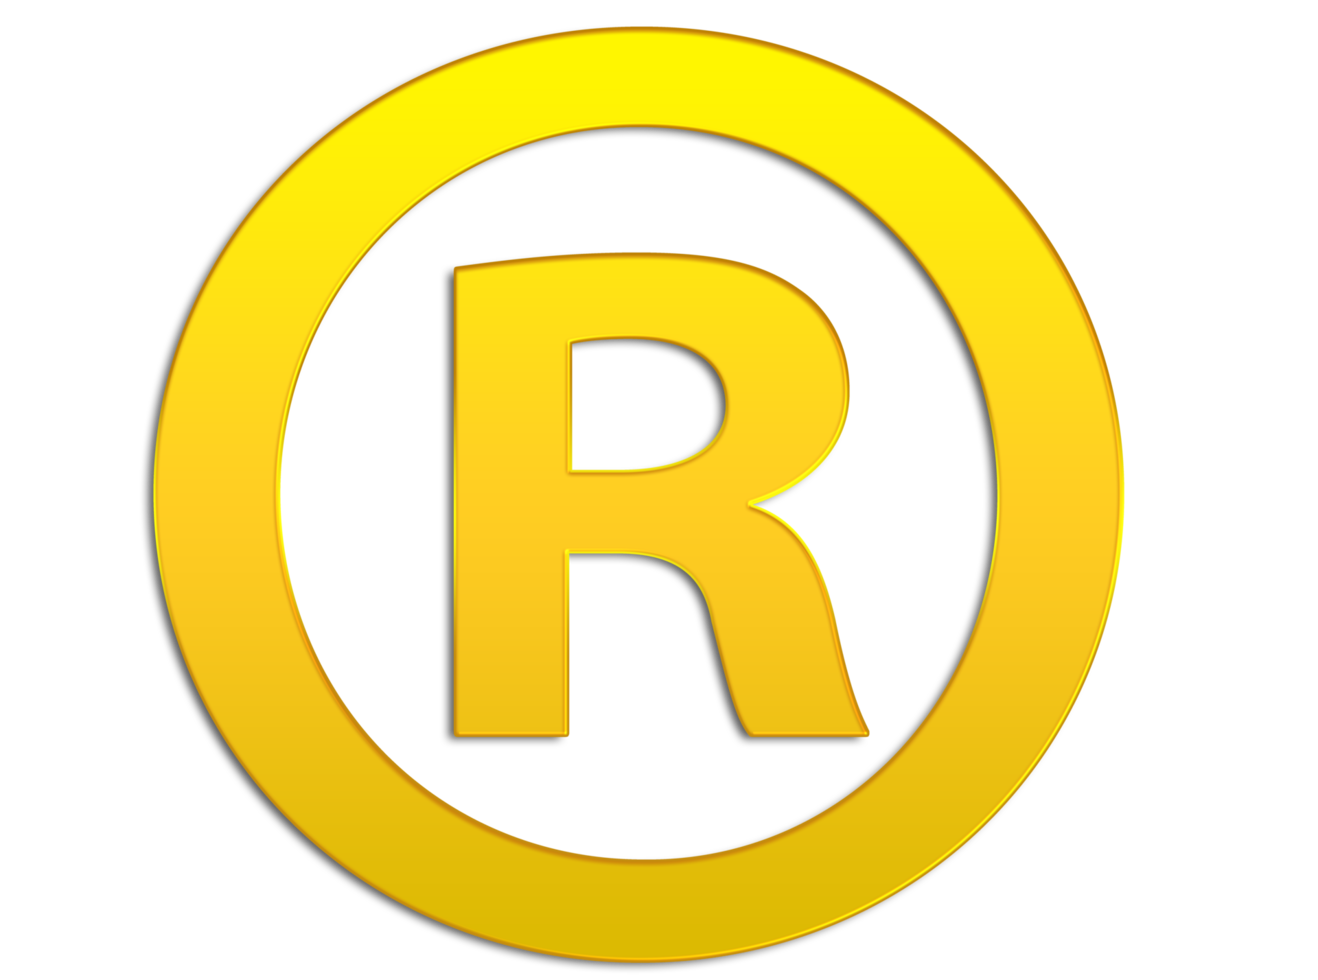 ícone do logotipo da marca registrada em fundo transparente png